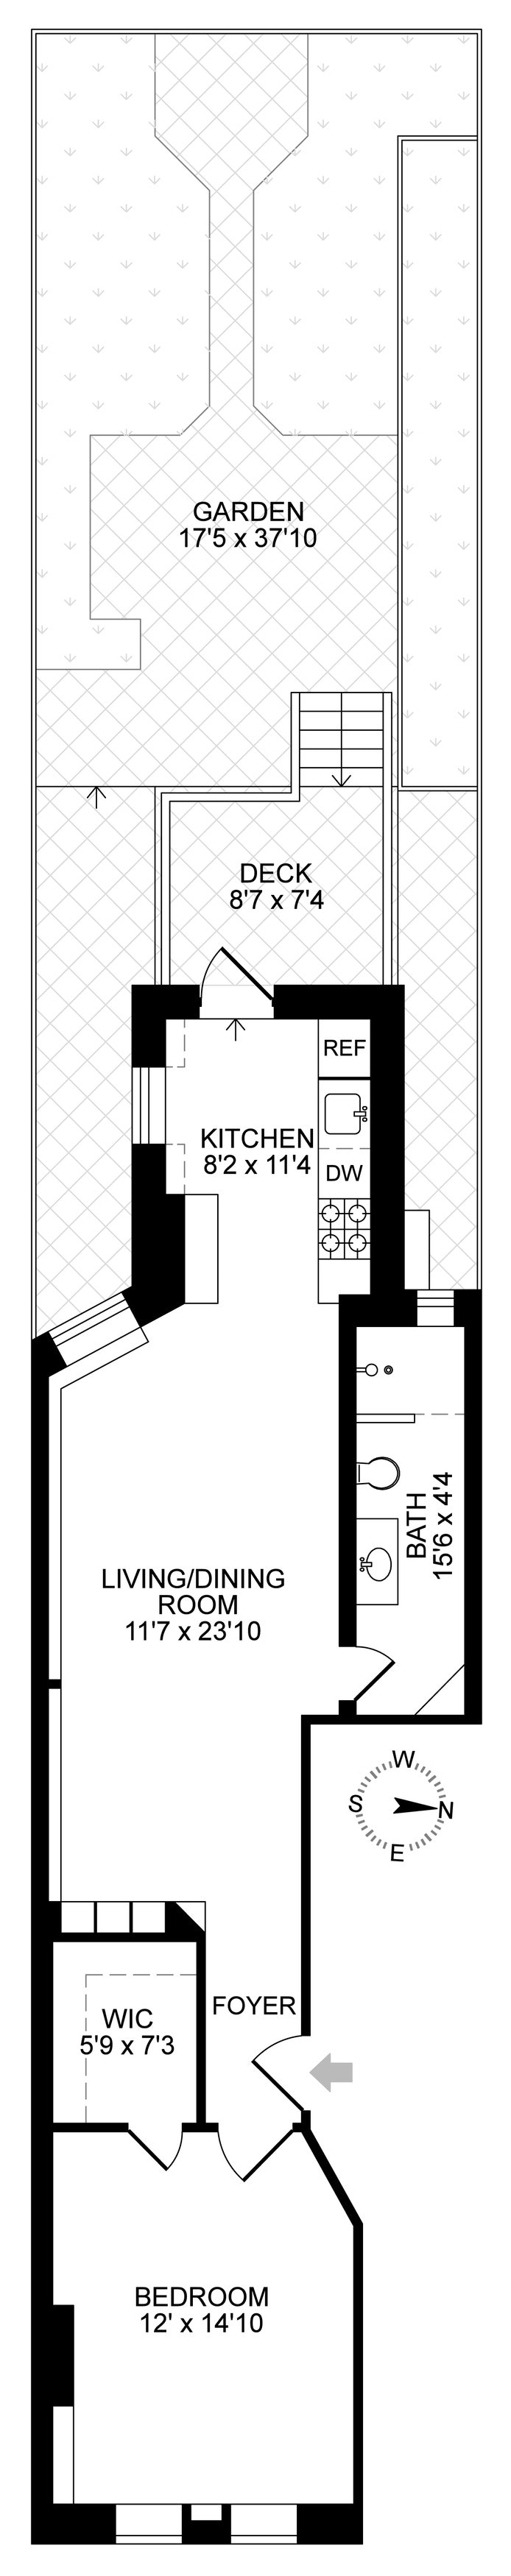 Floorplan for 69 Sutton Street, 1